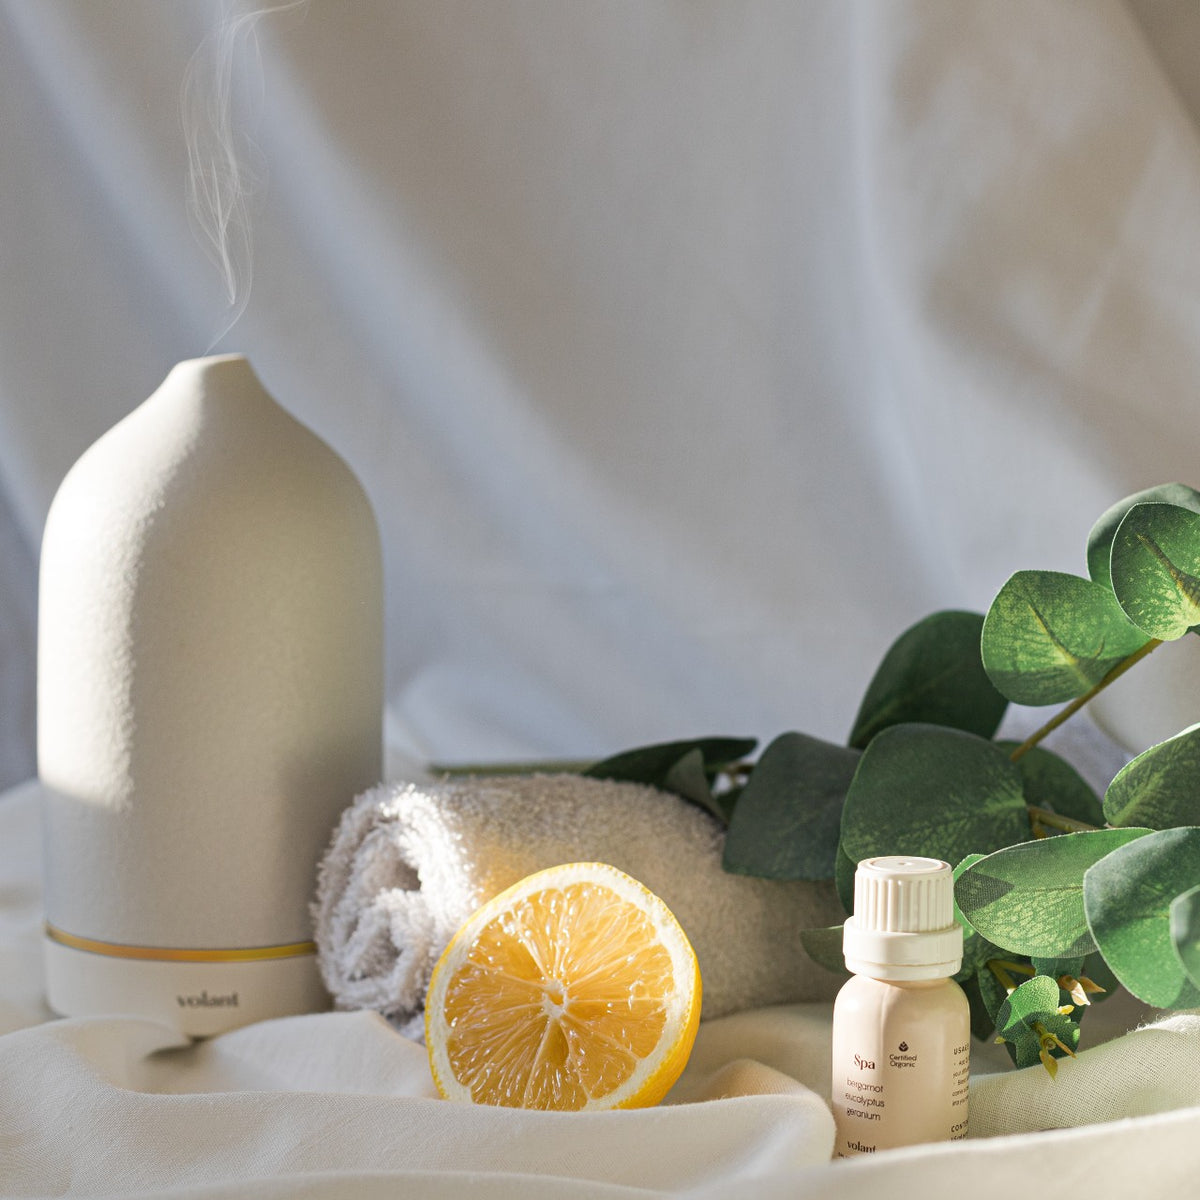 Volant vit diffusor med en blandning av eteriska spa-oljor. Tillverkad med ren eukalyptus, geranium och bergamott återskapar den den lugnande och uppfriskande spakänslan.